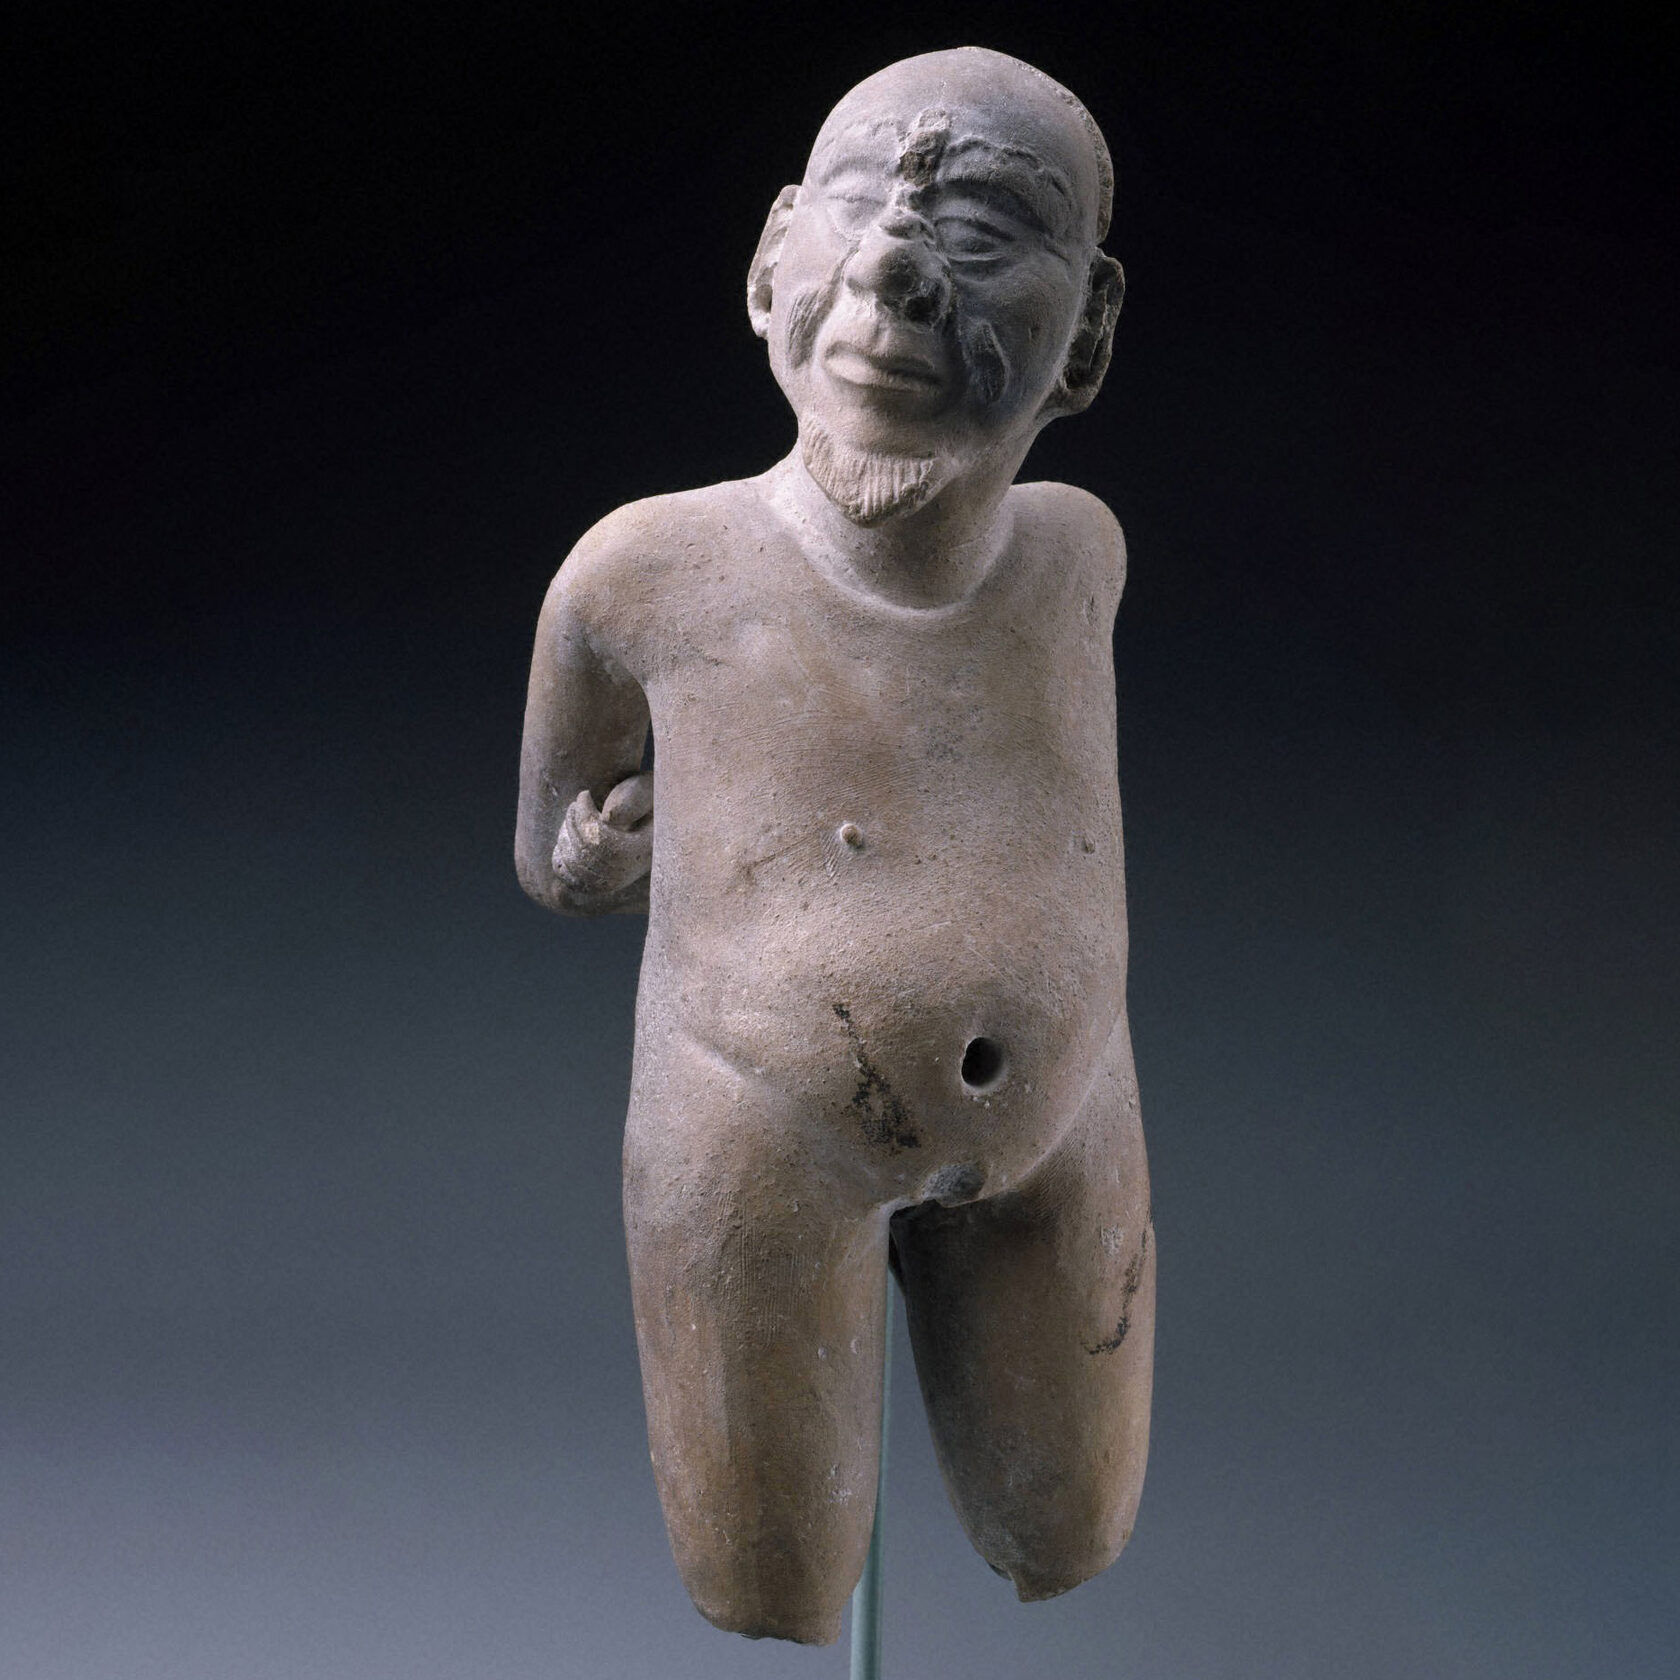 Пленник. Майя, 600-800 гг. н.э. Коллекция Princeton University Art Museum.